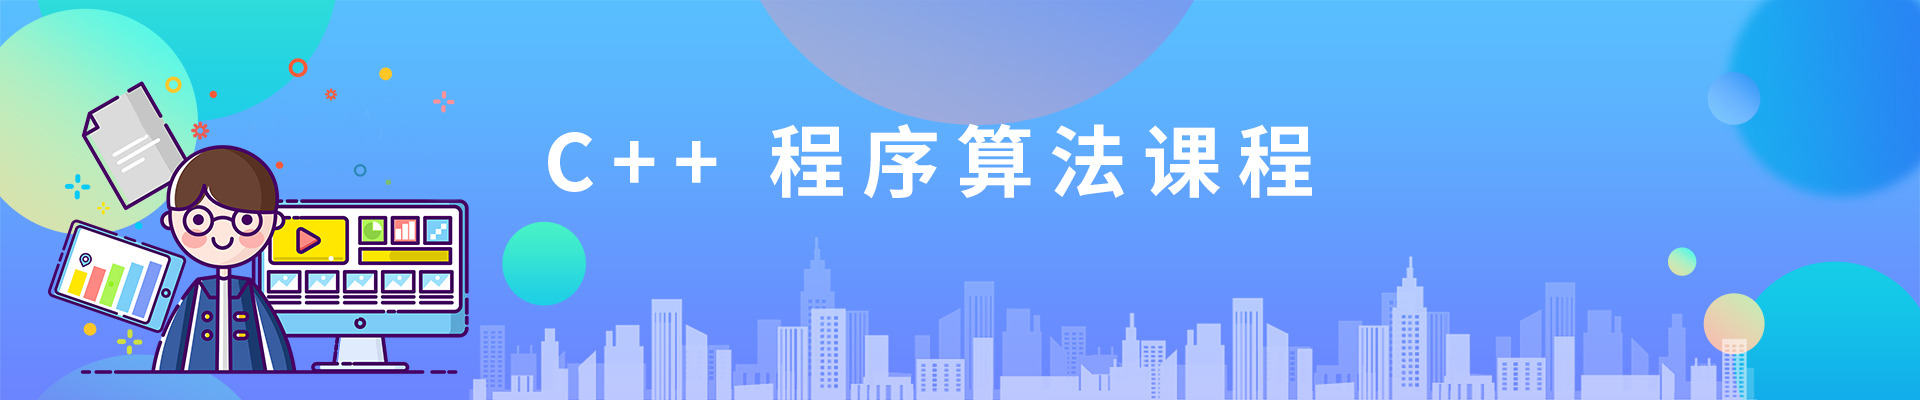 上海天山缤谷广场小码王少儿编程培训机构